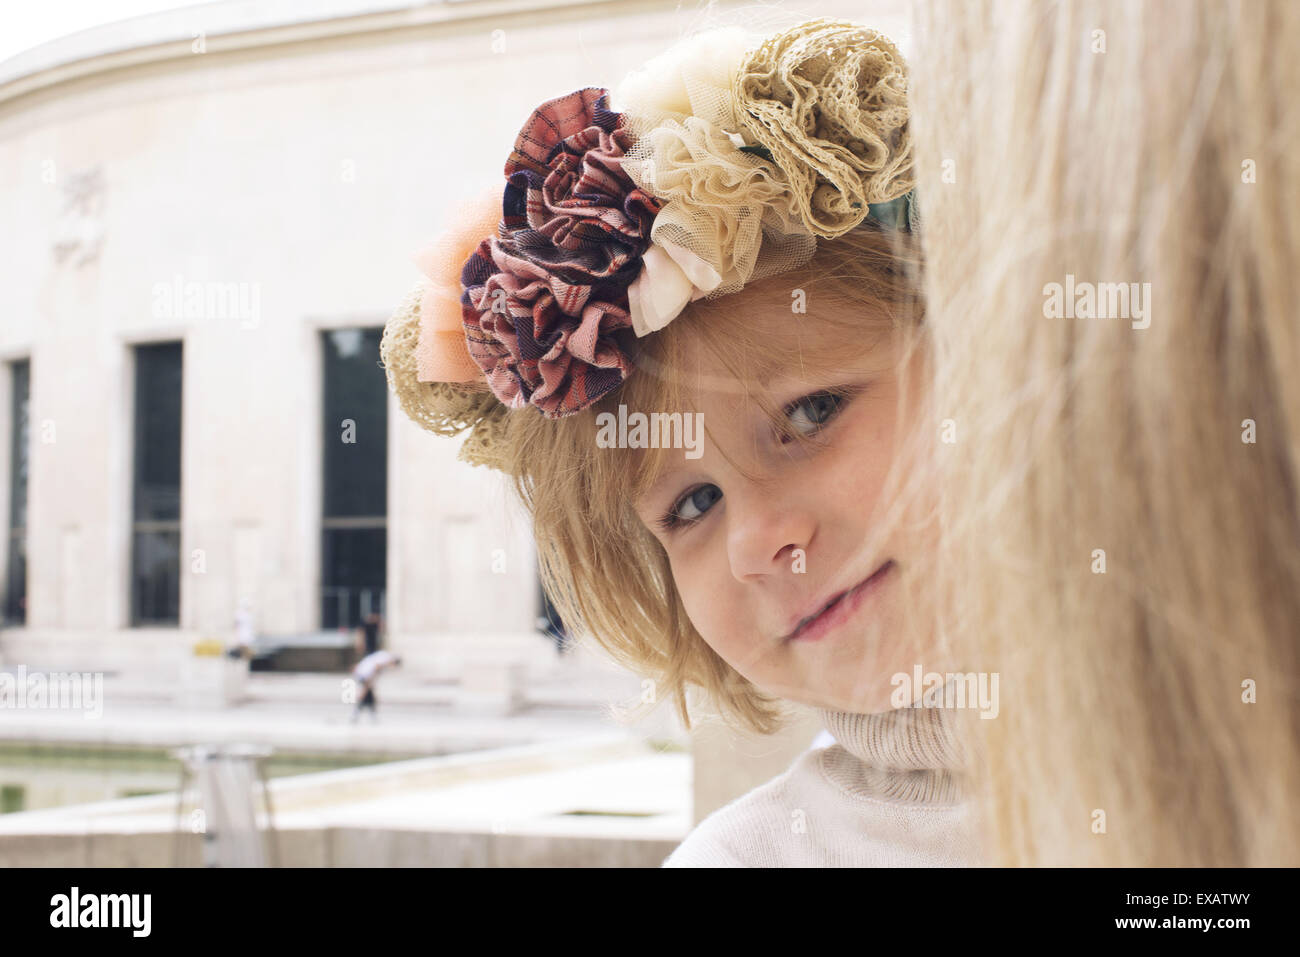 Little girl peeking around mother's head, portrait Stock Photo